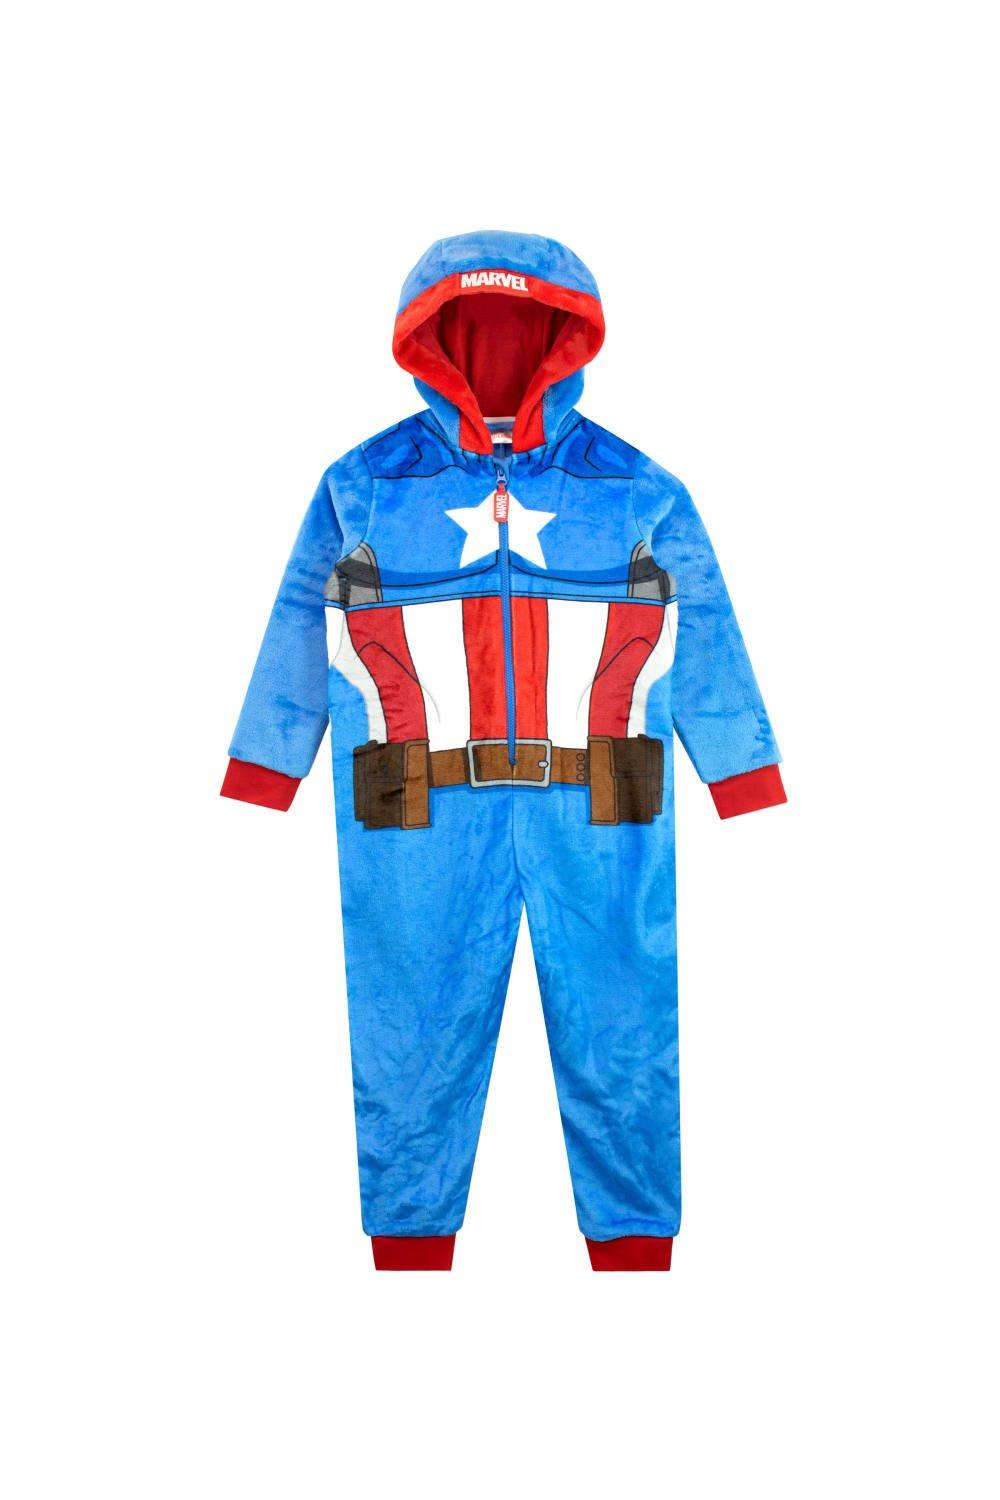 Avengers Captain America Fleece Onesie All In One